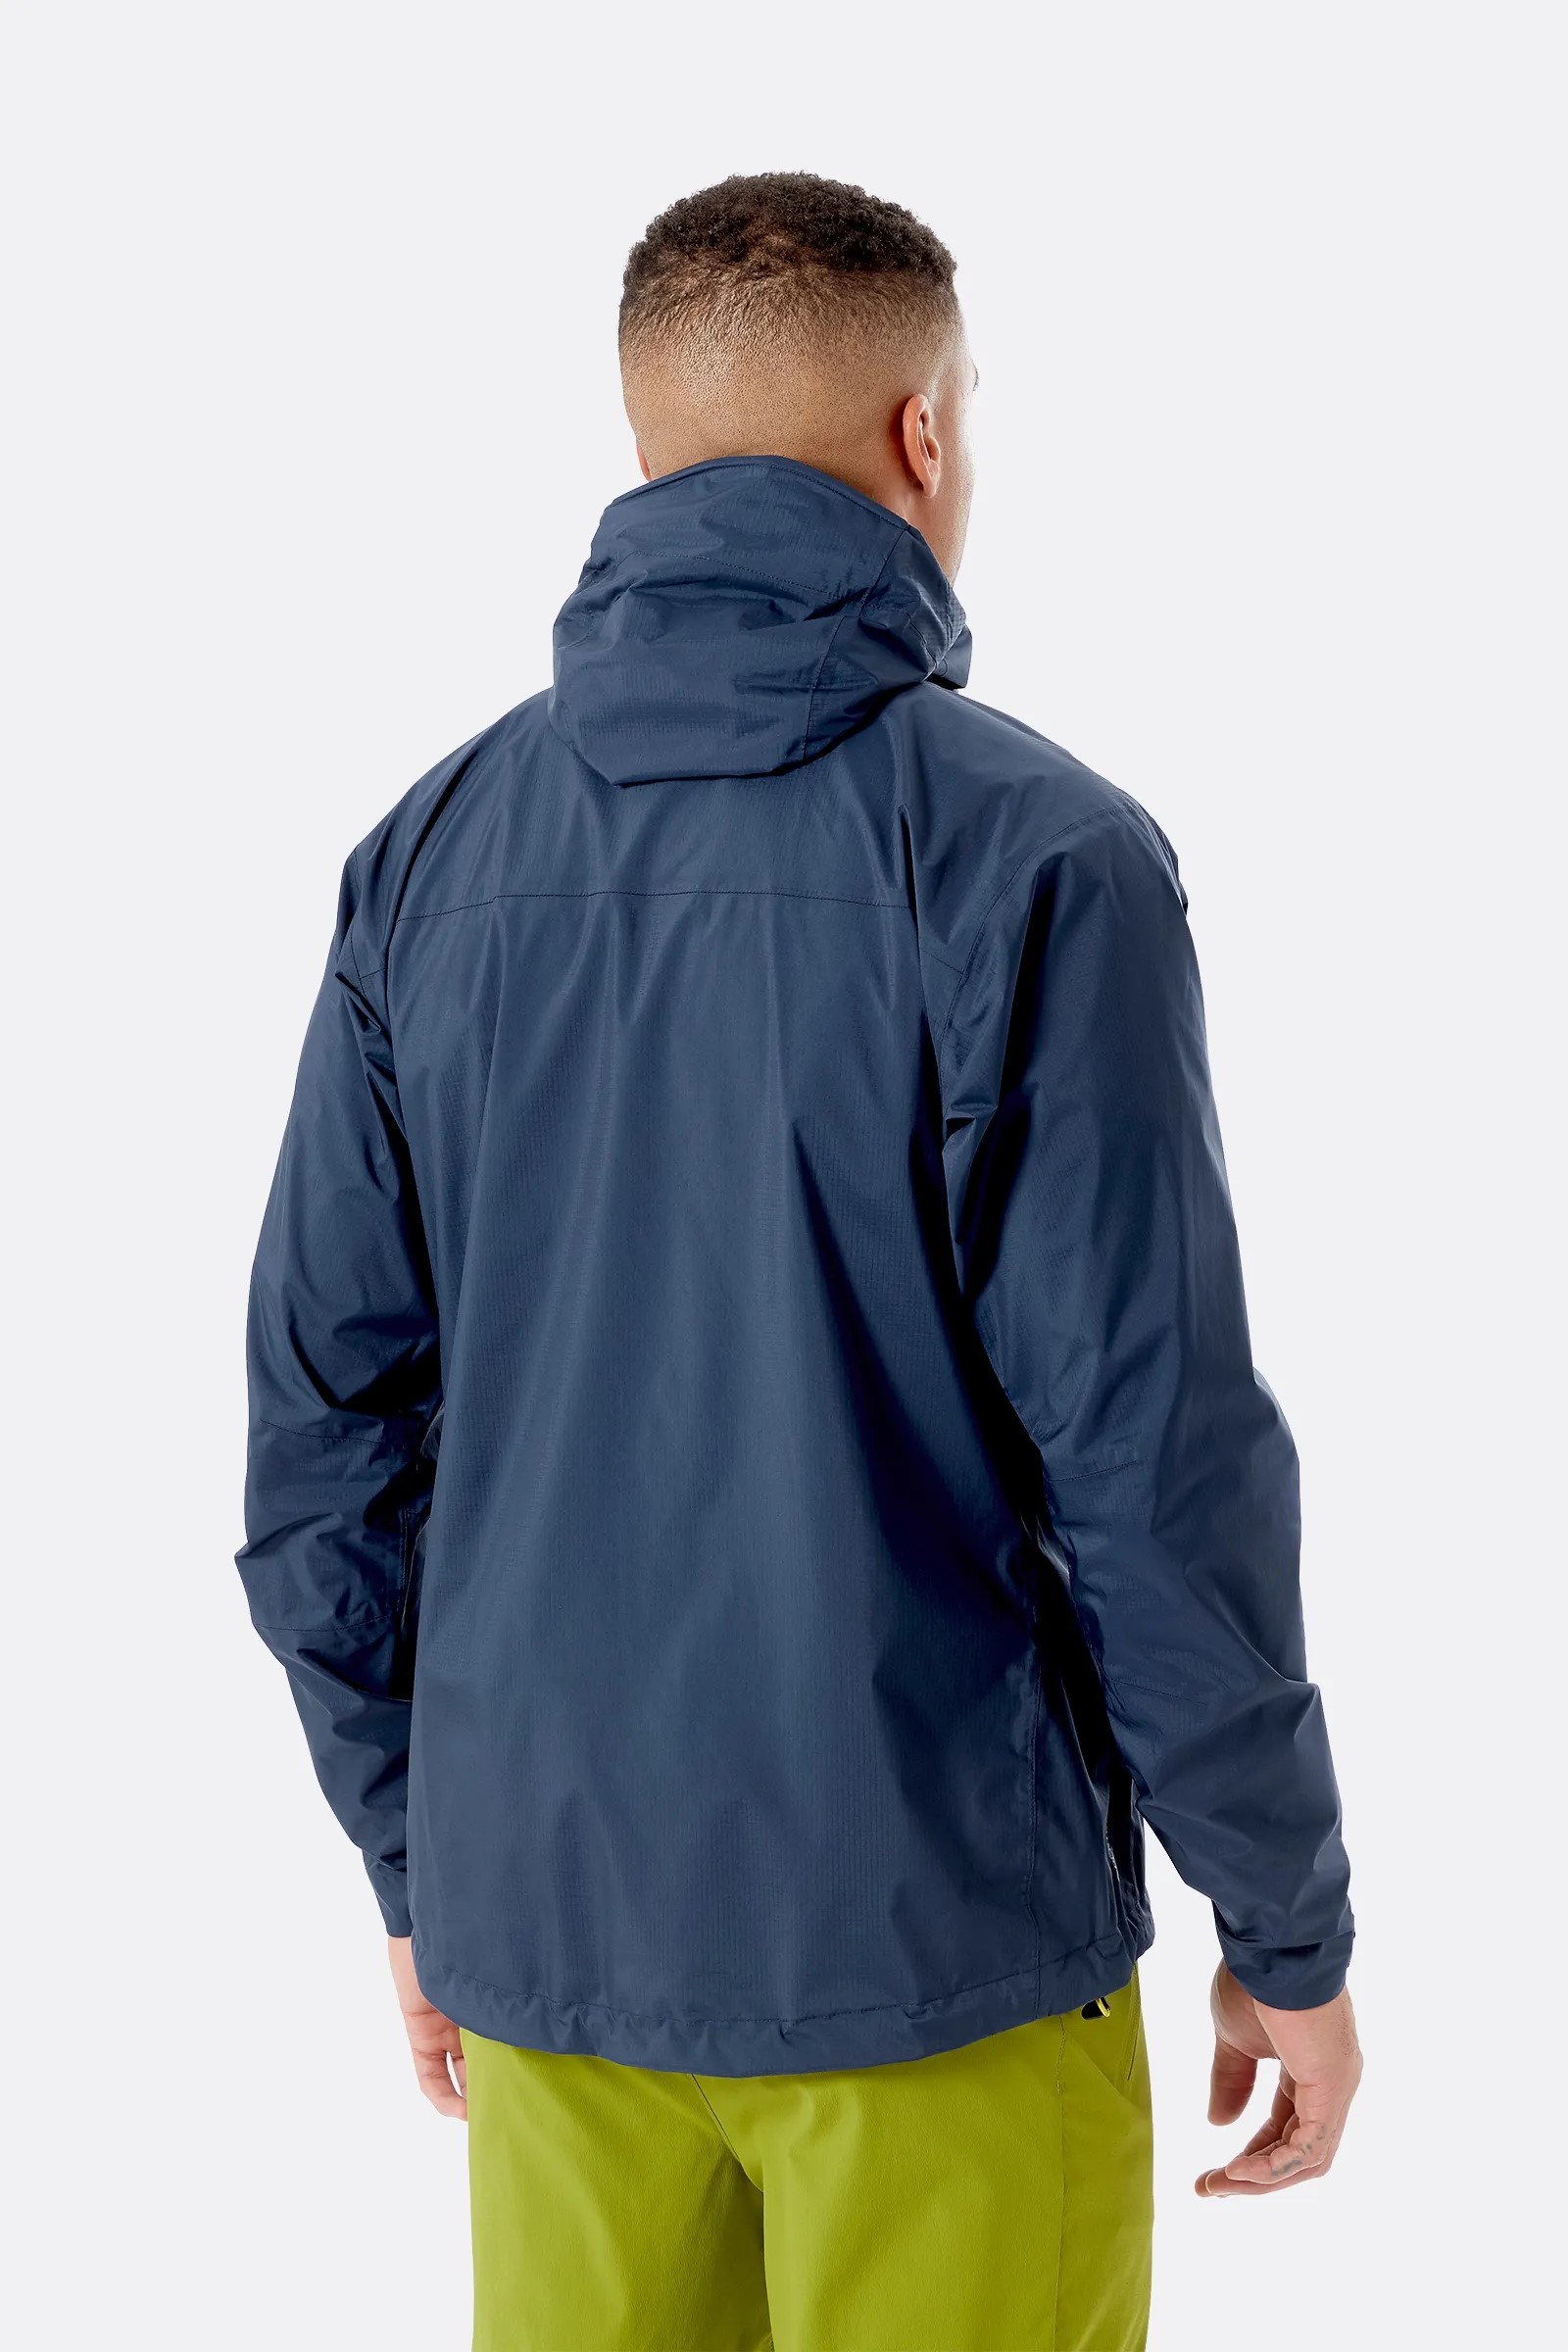 Men's Downpour Plus 2.0 Jacket